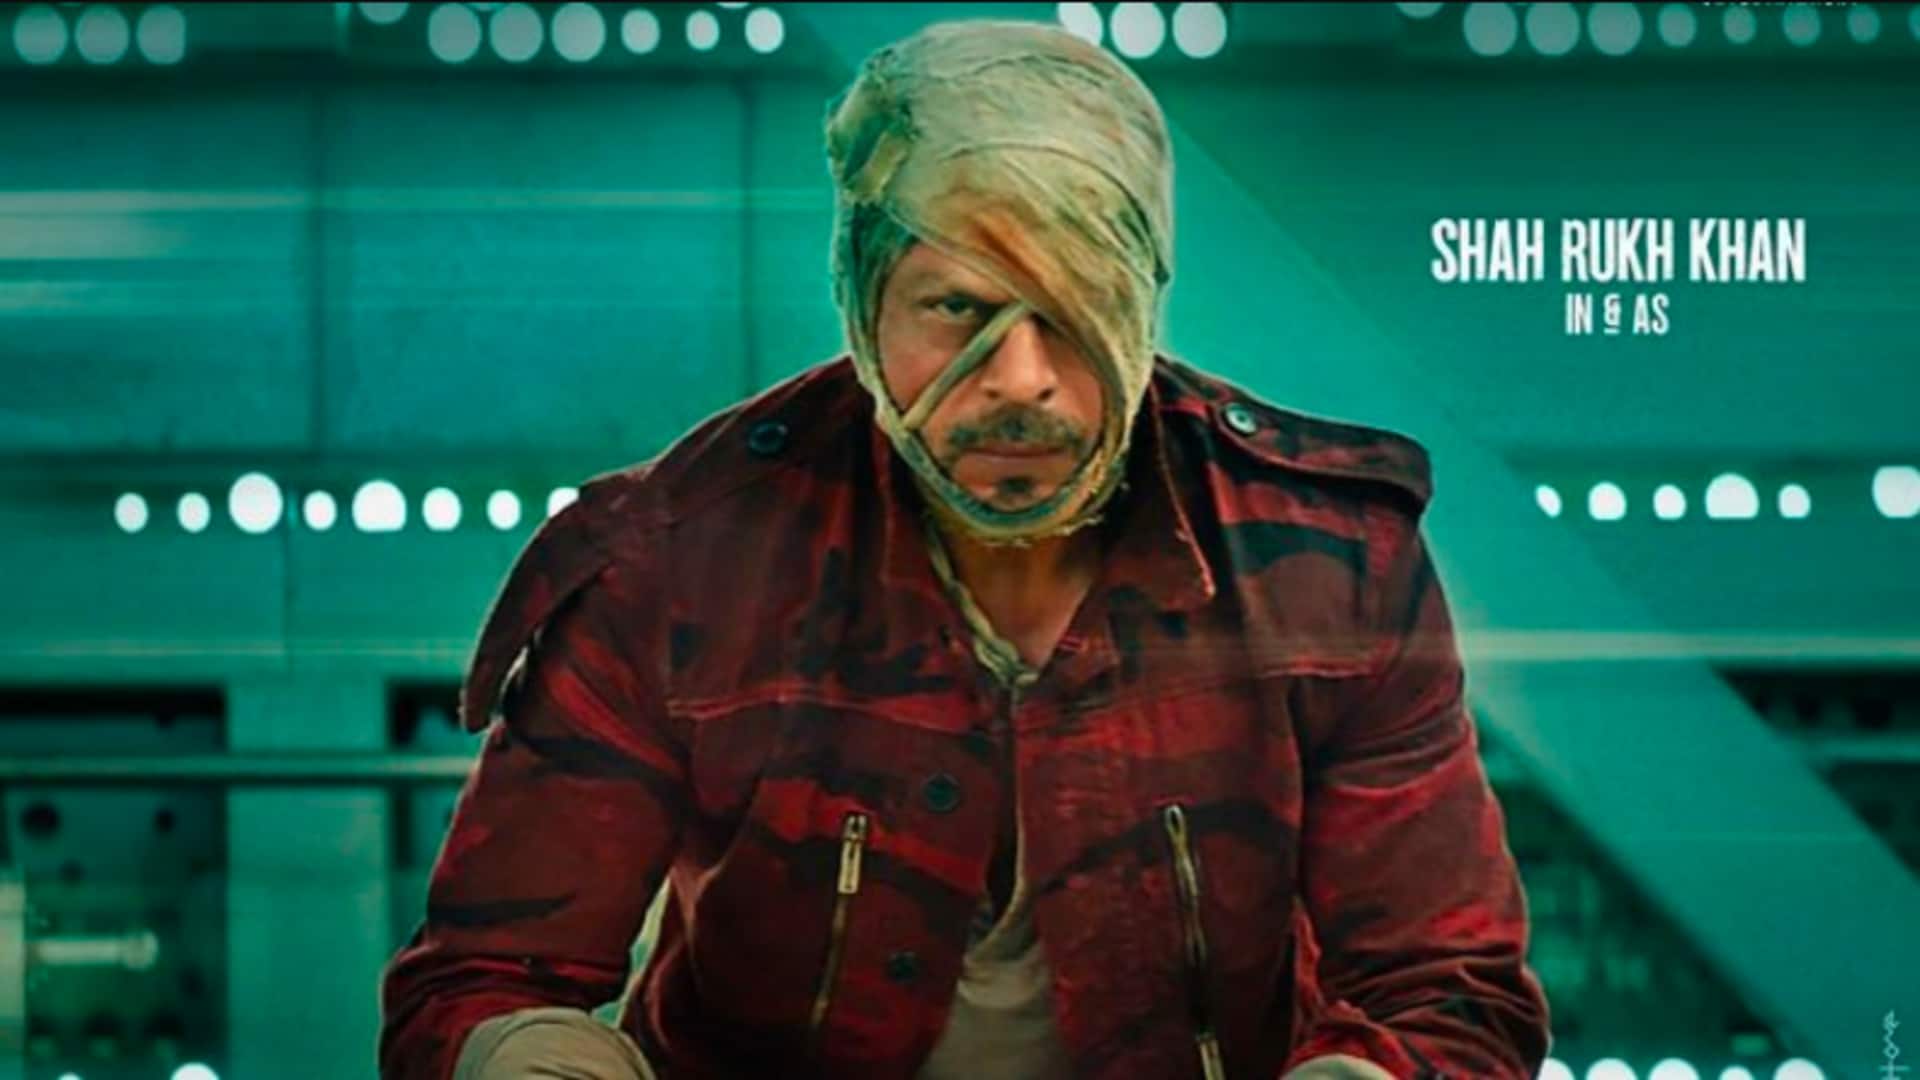 फिल्म 'जवान' का नया गाना 'नॉट रमैया वस्तावैया' जारी, शाहरुख खान का दिखा अनोखा अंदाज 